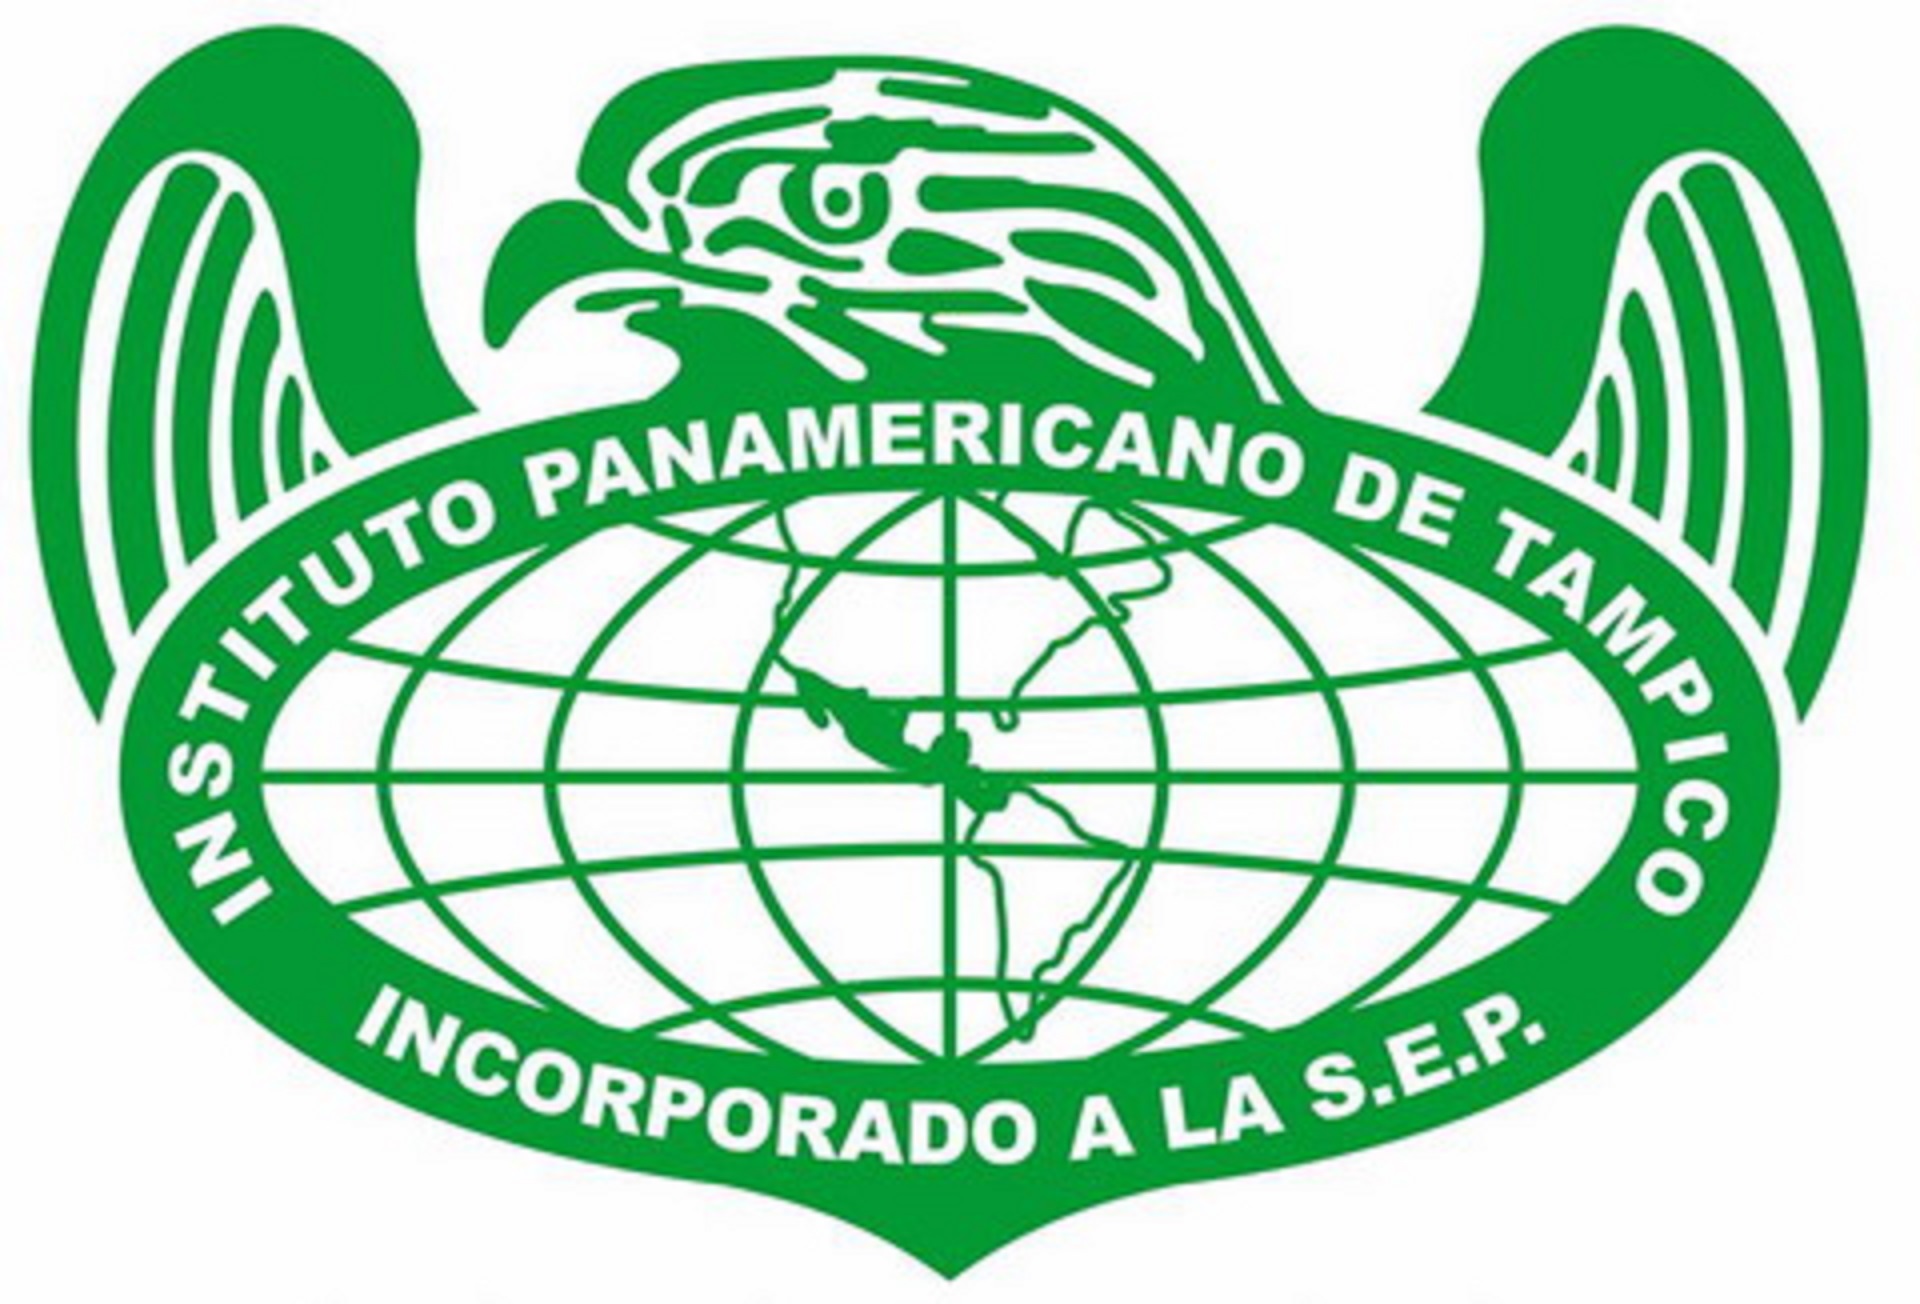 IPT Instituto Panamericano de Tampico